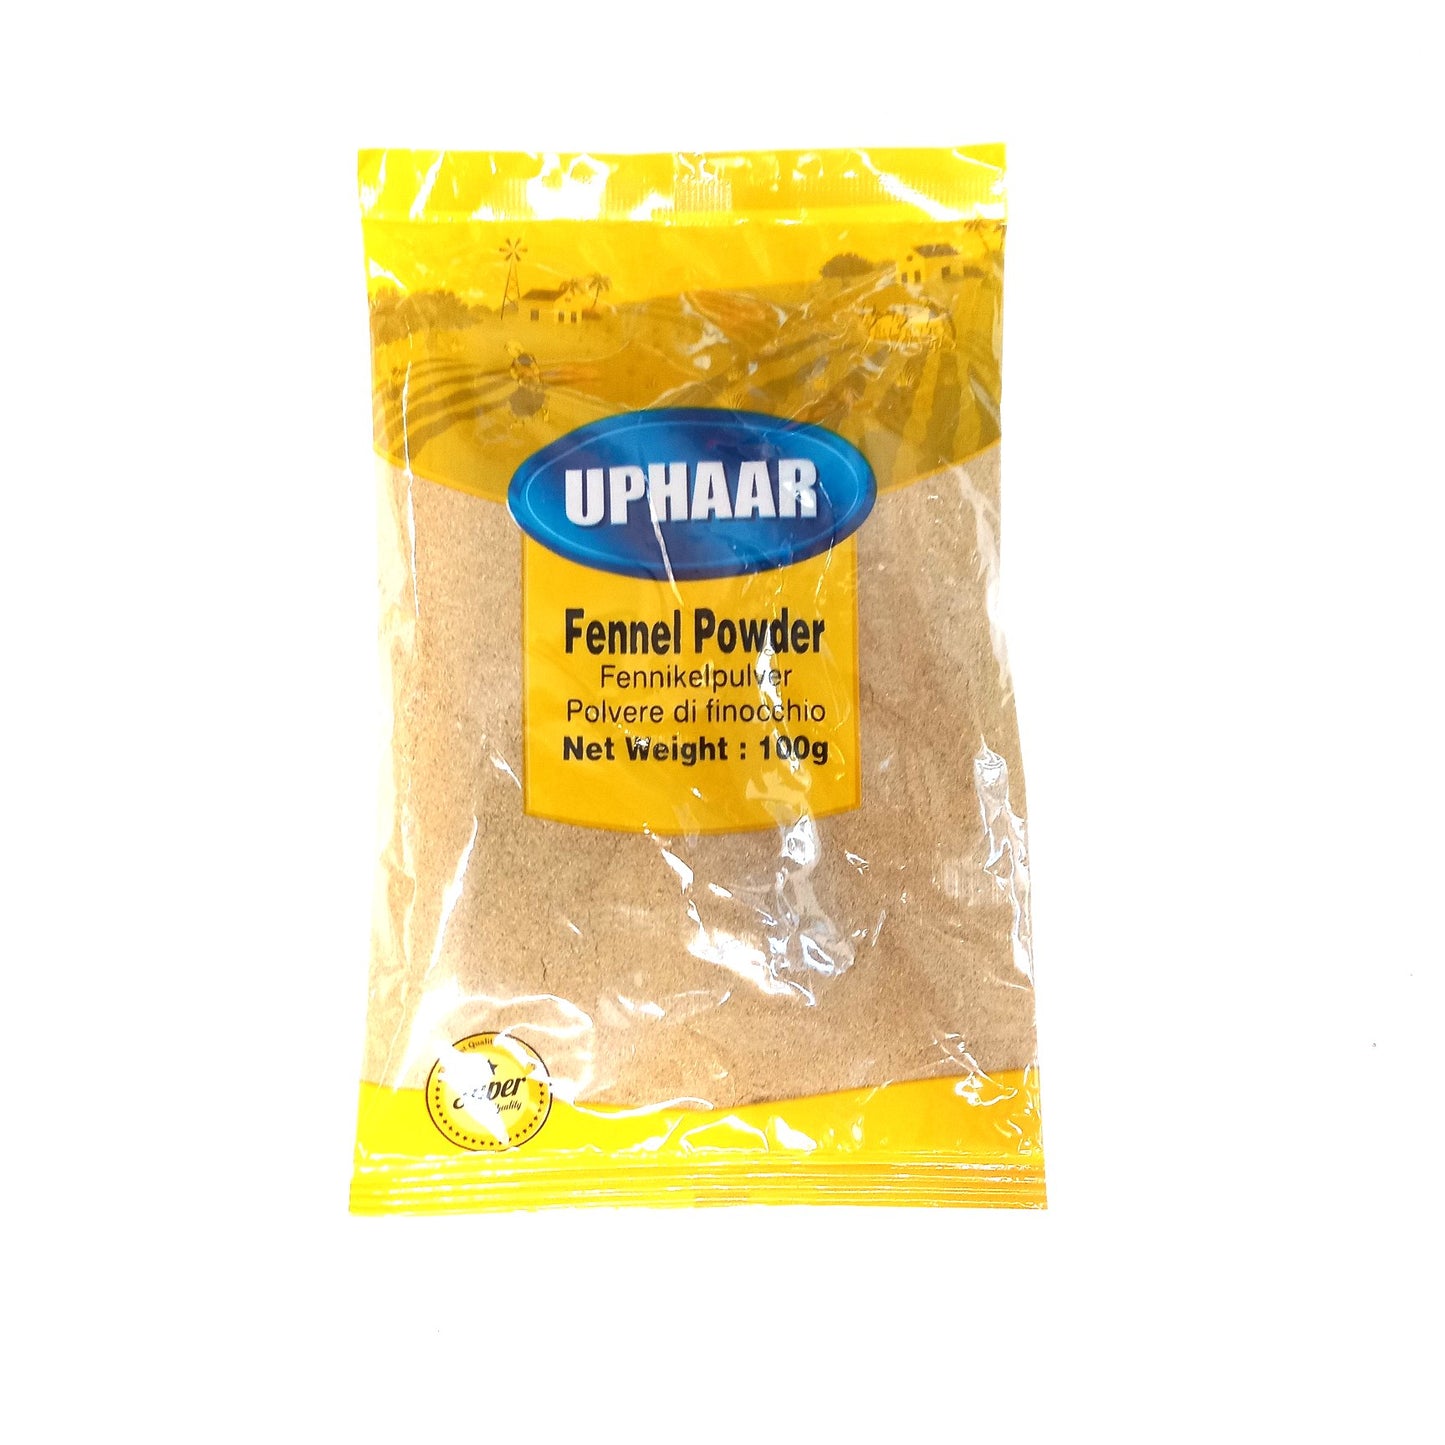 Uphaar Fennel Powder 100g